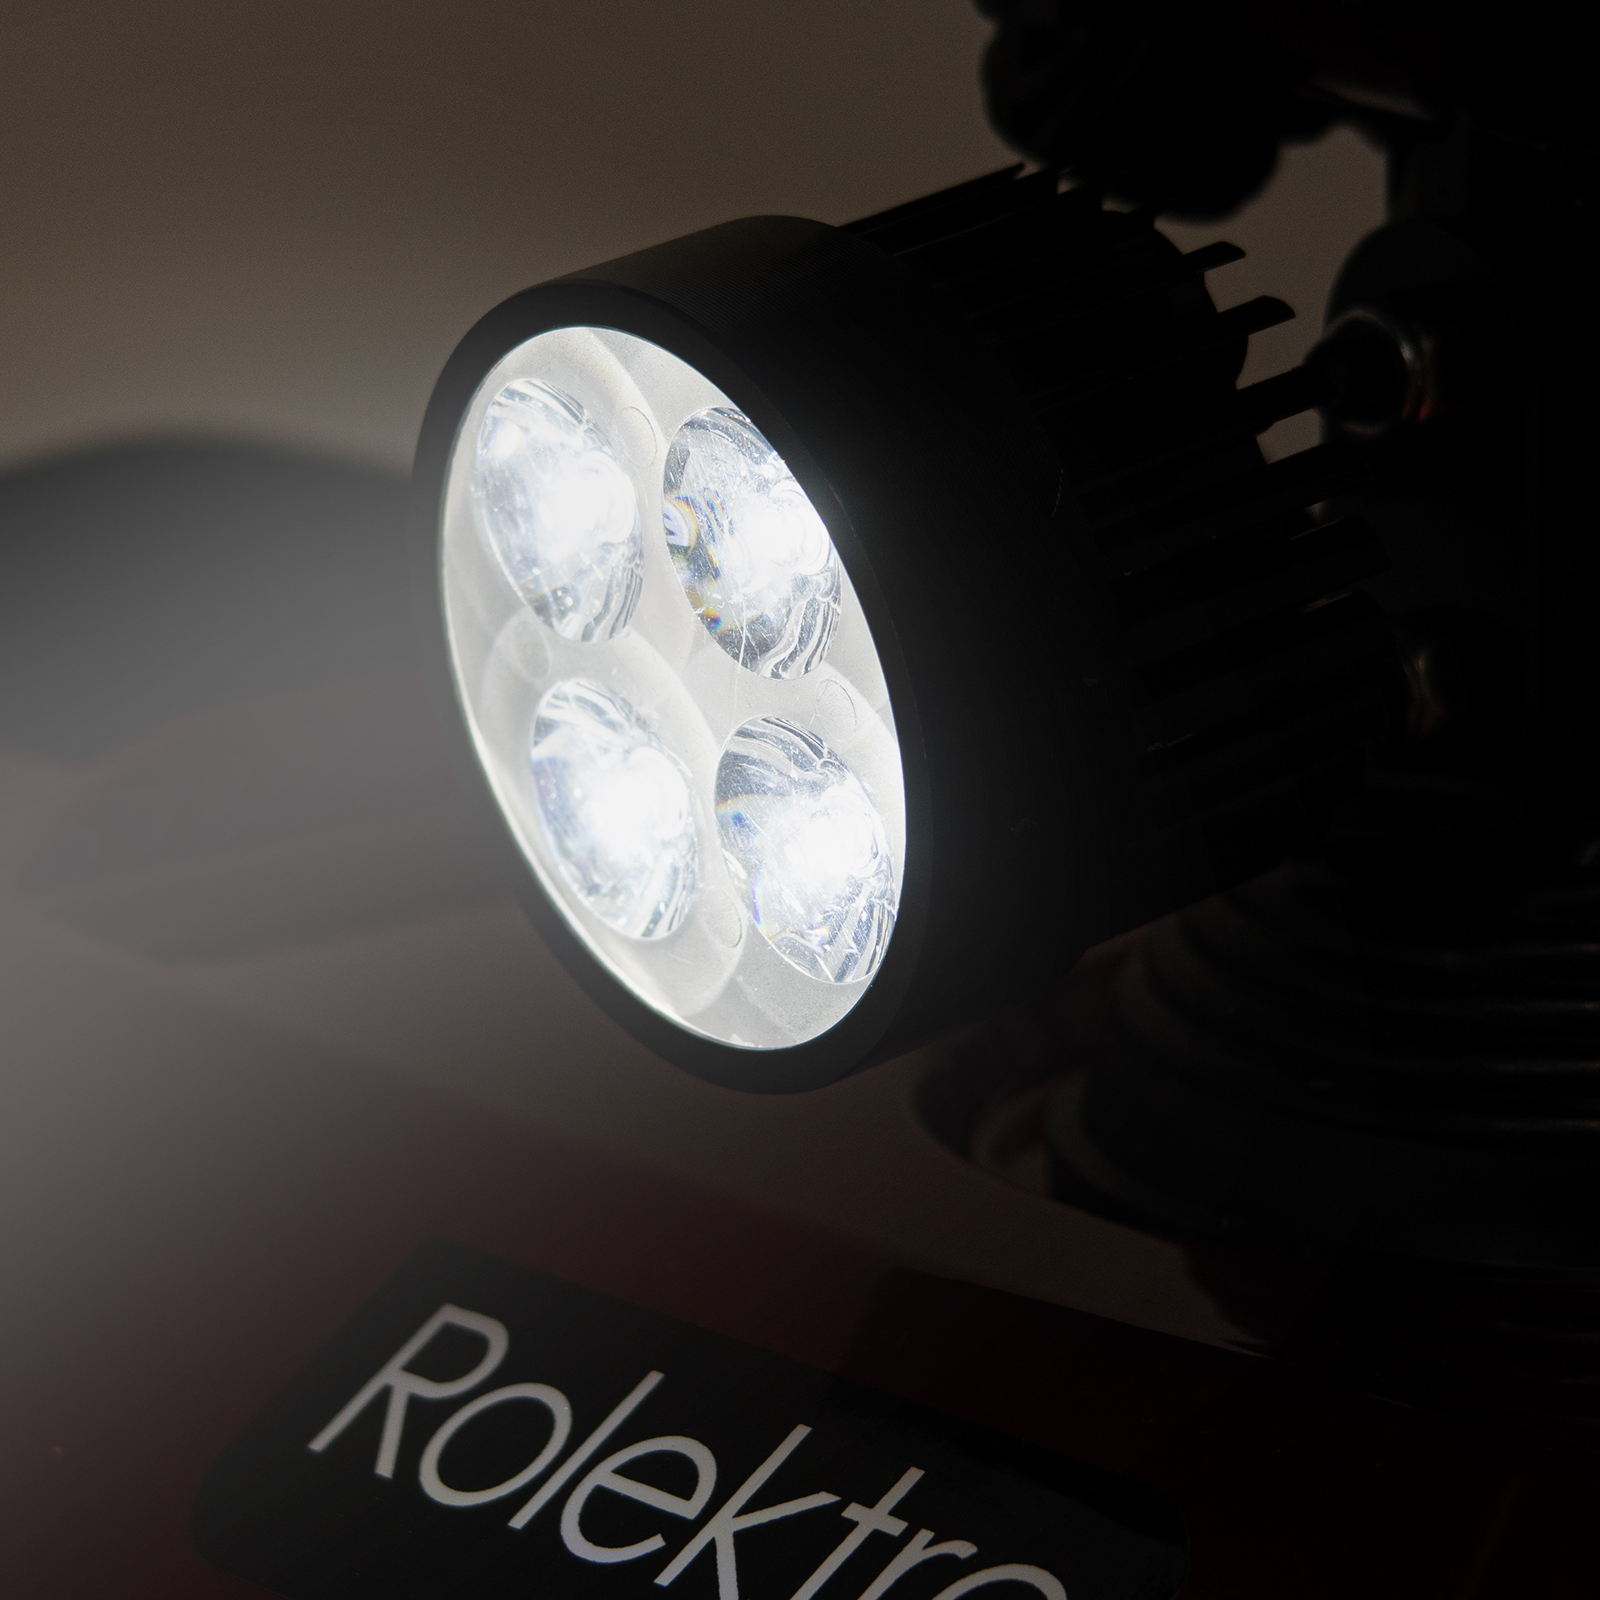 Rolektro E-Quad 6 V.3  Lithium, Rot, 6 km/h